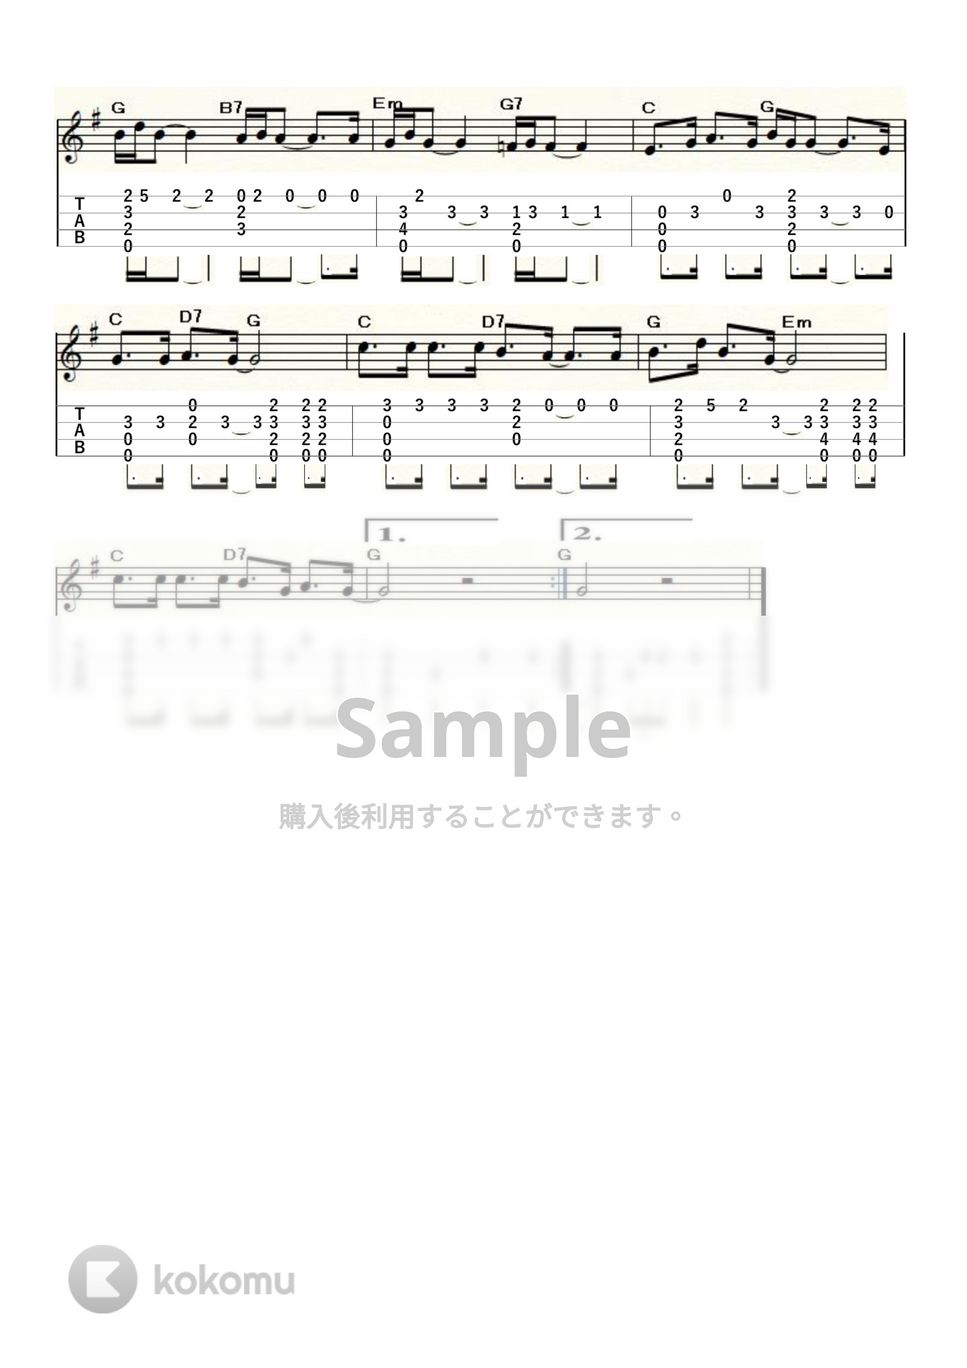 ダニエル・ビダル - オー・シャンゼリゼ (ｳｸﾚﾚｿﾛ / High-G,Low-G / 中級) by ukulelepapa